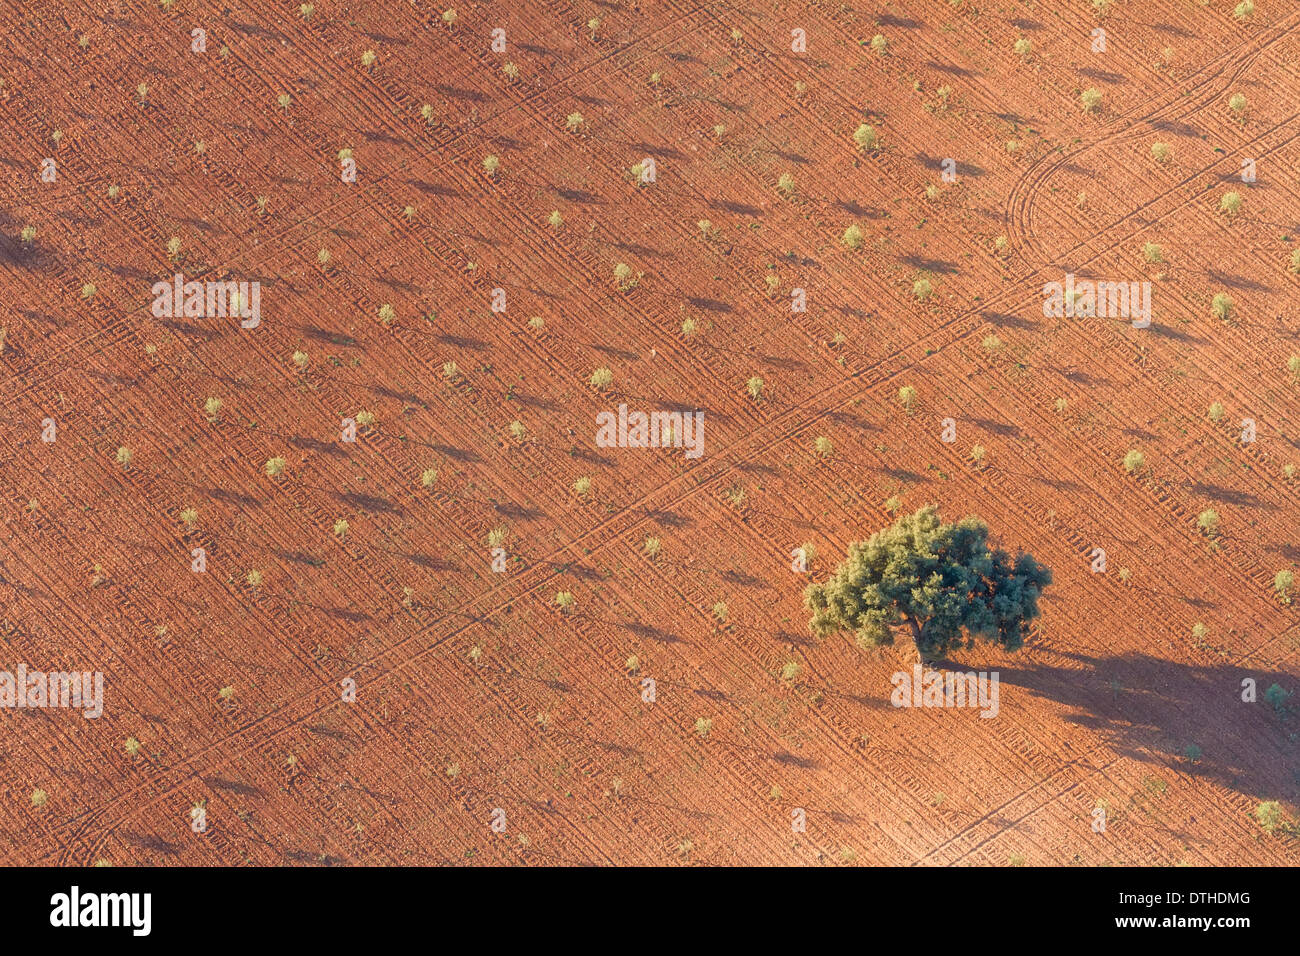 Matin d'automne Vue aérienne d'un arbre isolé dans une terre de culture. Centre de Majorque, Iles Baléares, Espagne Banque D'Images